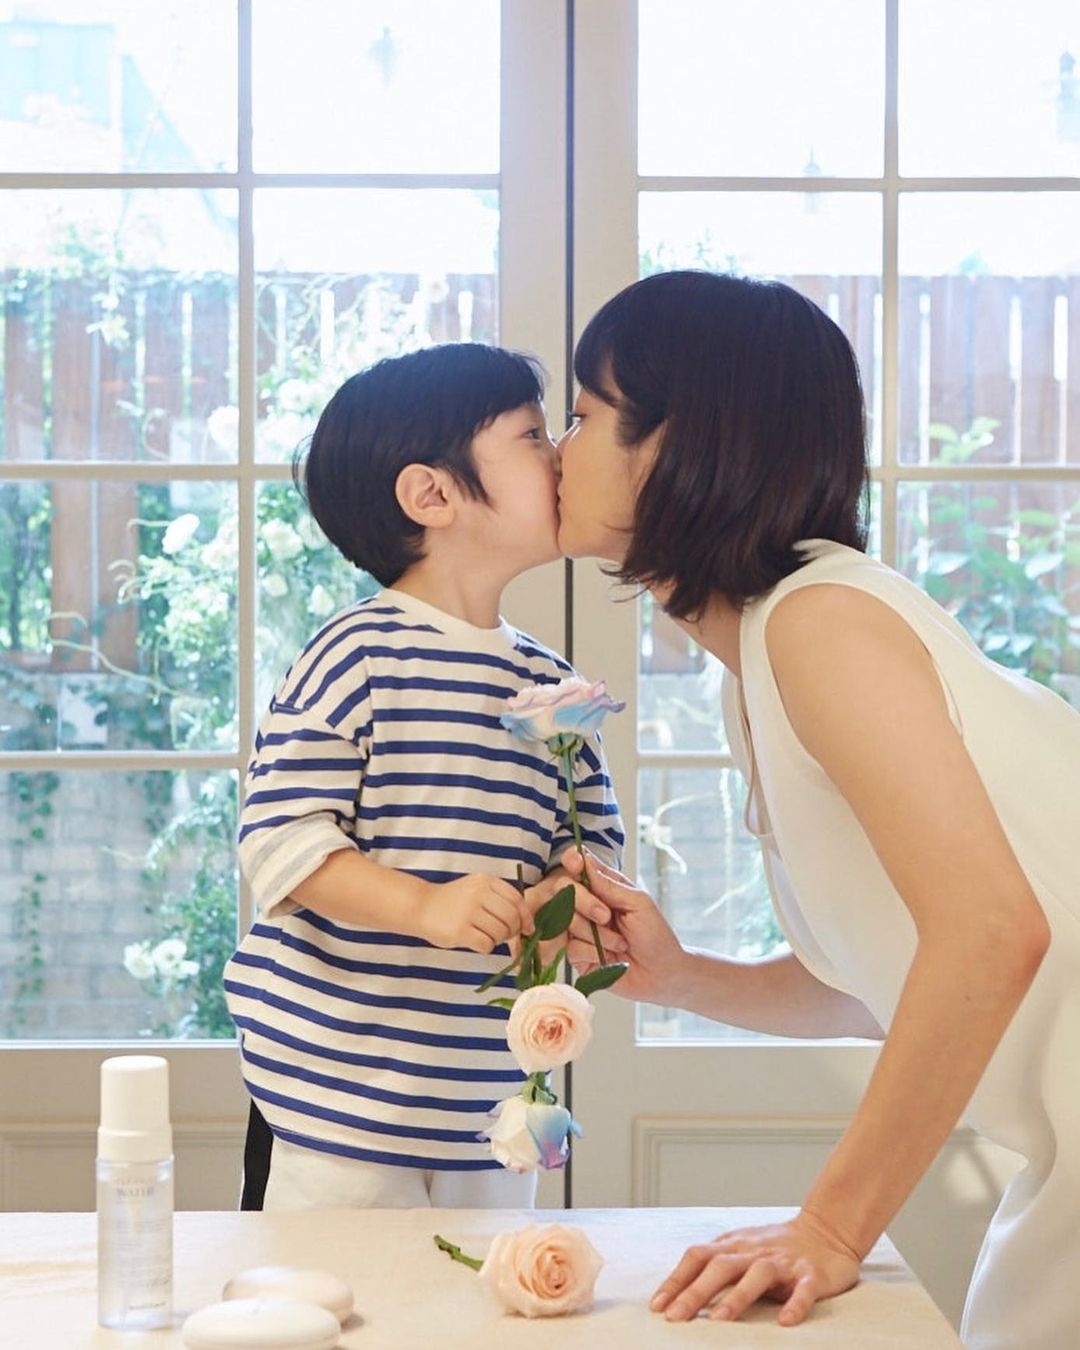 Cuộc sống “mẹ bỉm sữa” của mỹ nhân Hoa - Hàn: Người khiến công chúng xót xa vì cảnh mẹ đơn thân, người bị chỉ trích vì bỏ rơi con gái - Ảnh 4.